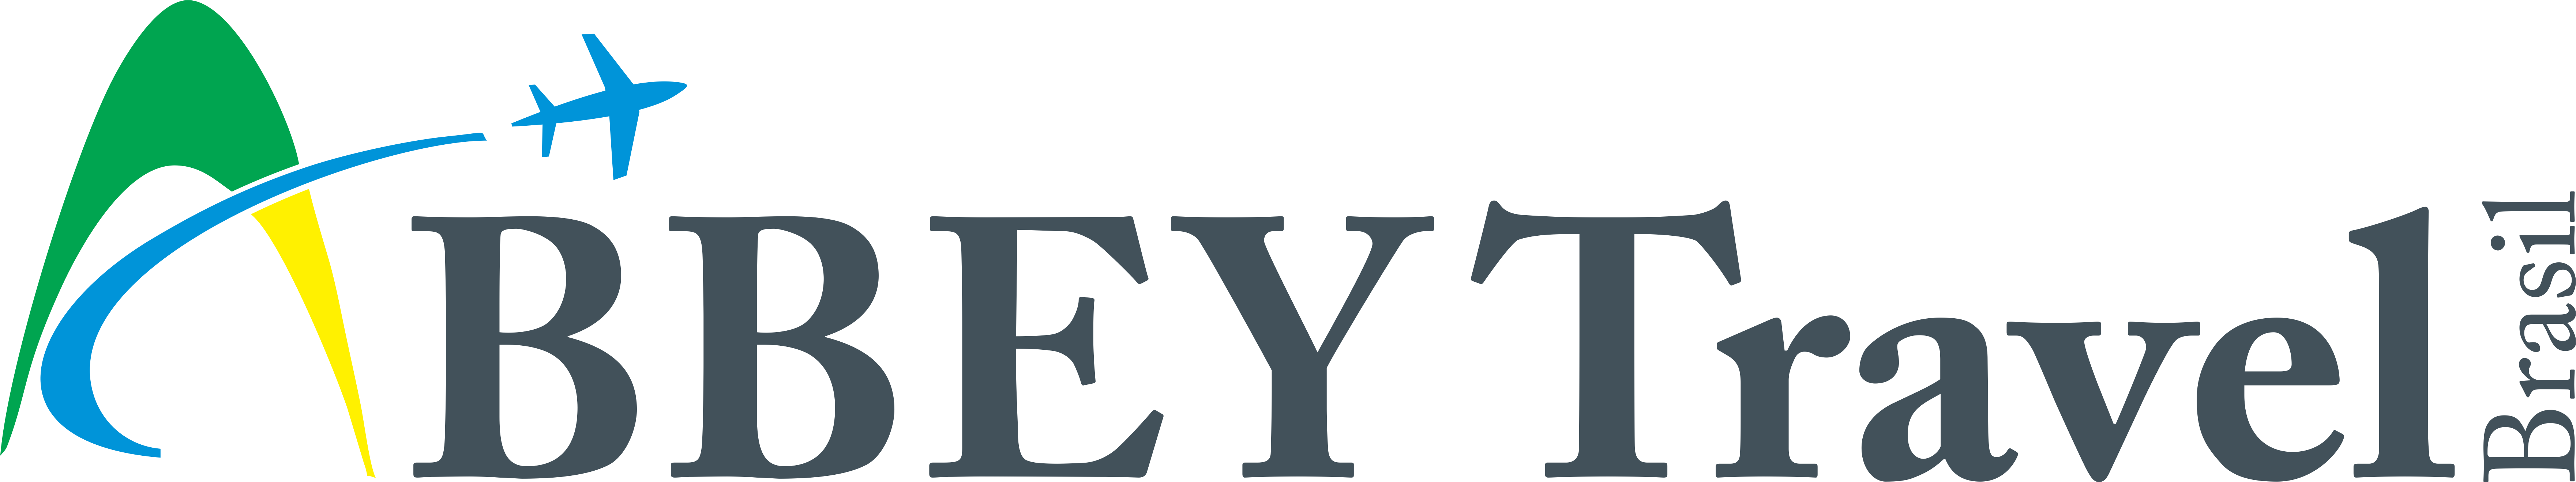 Logo-Abbey-simplificado.png